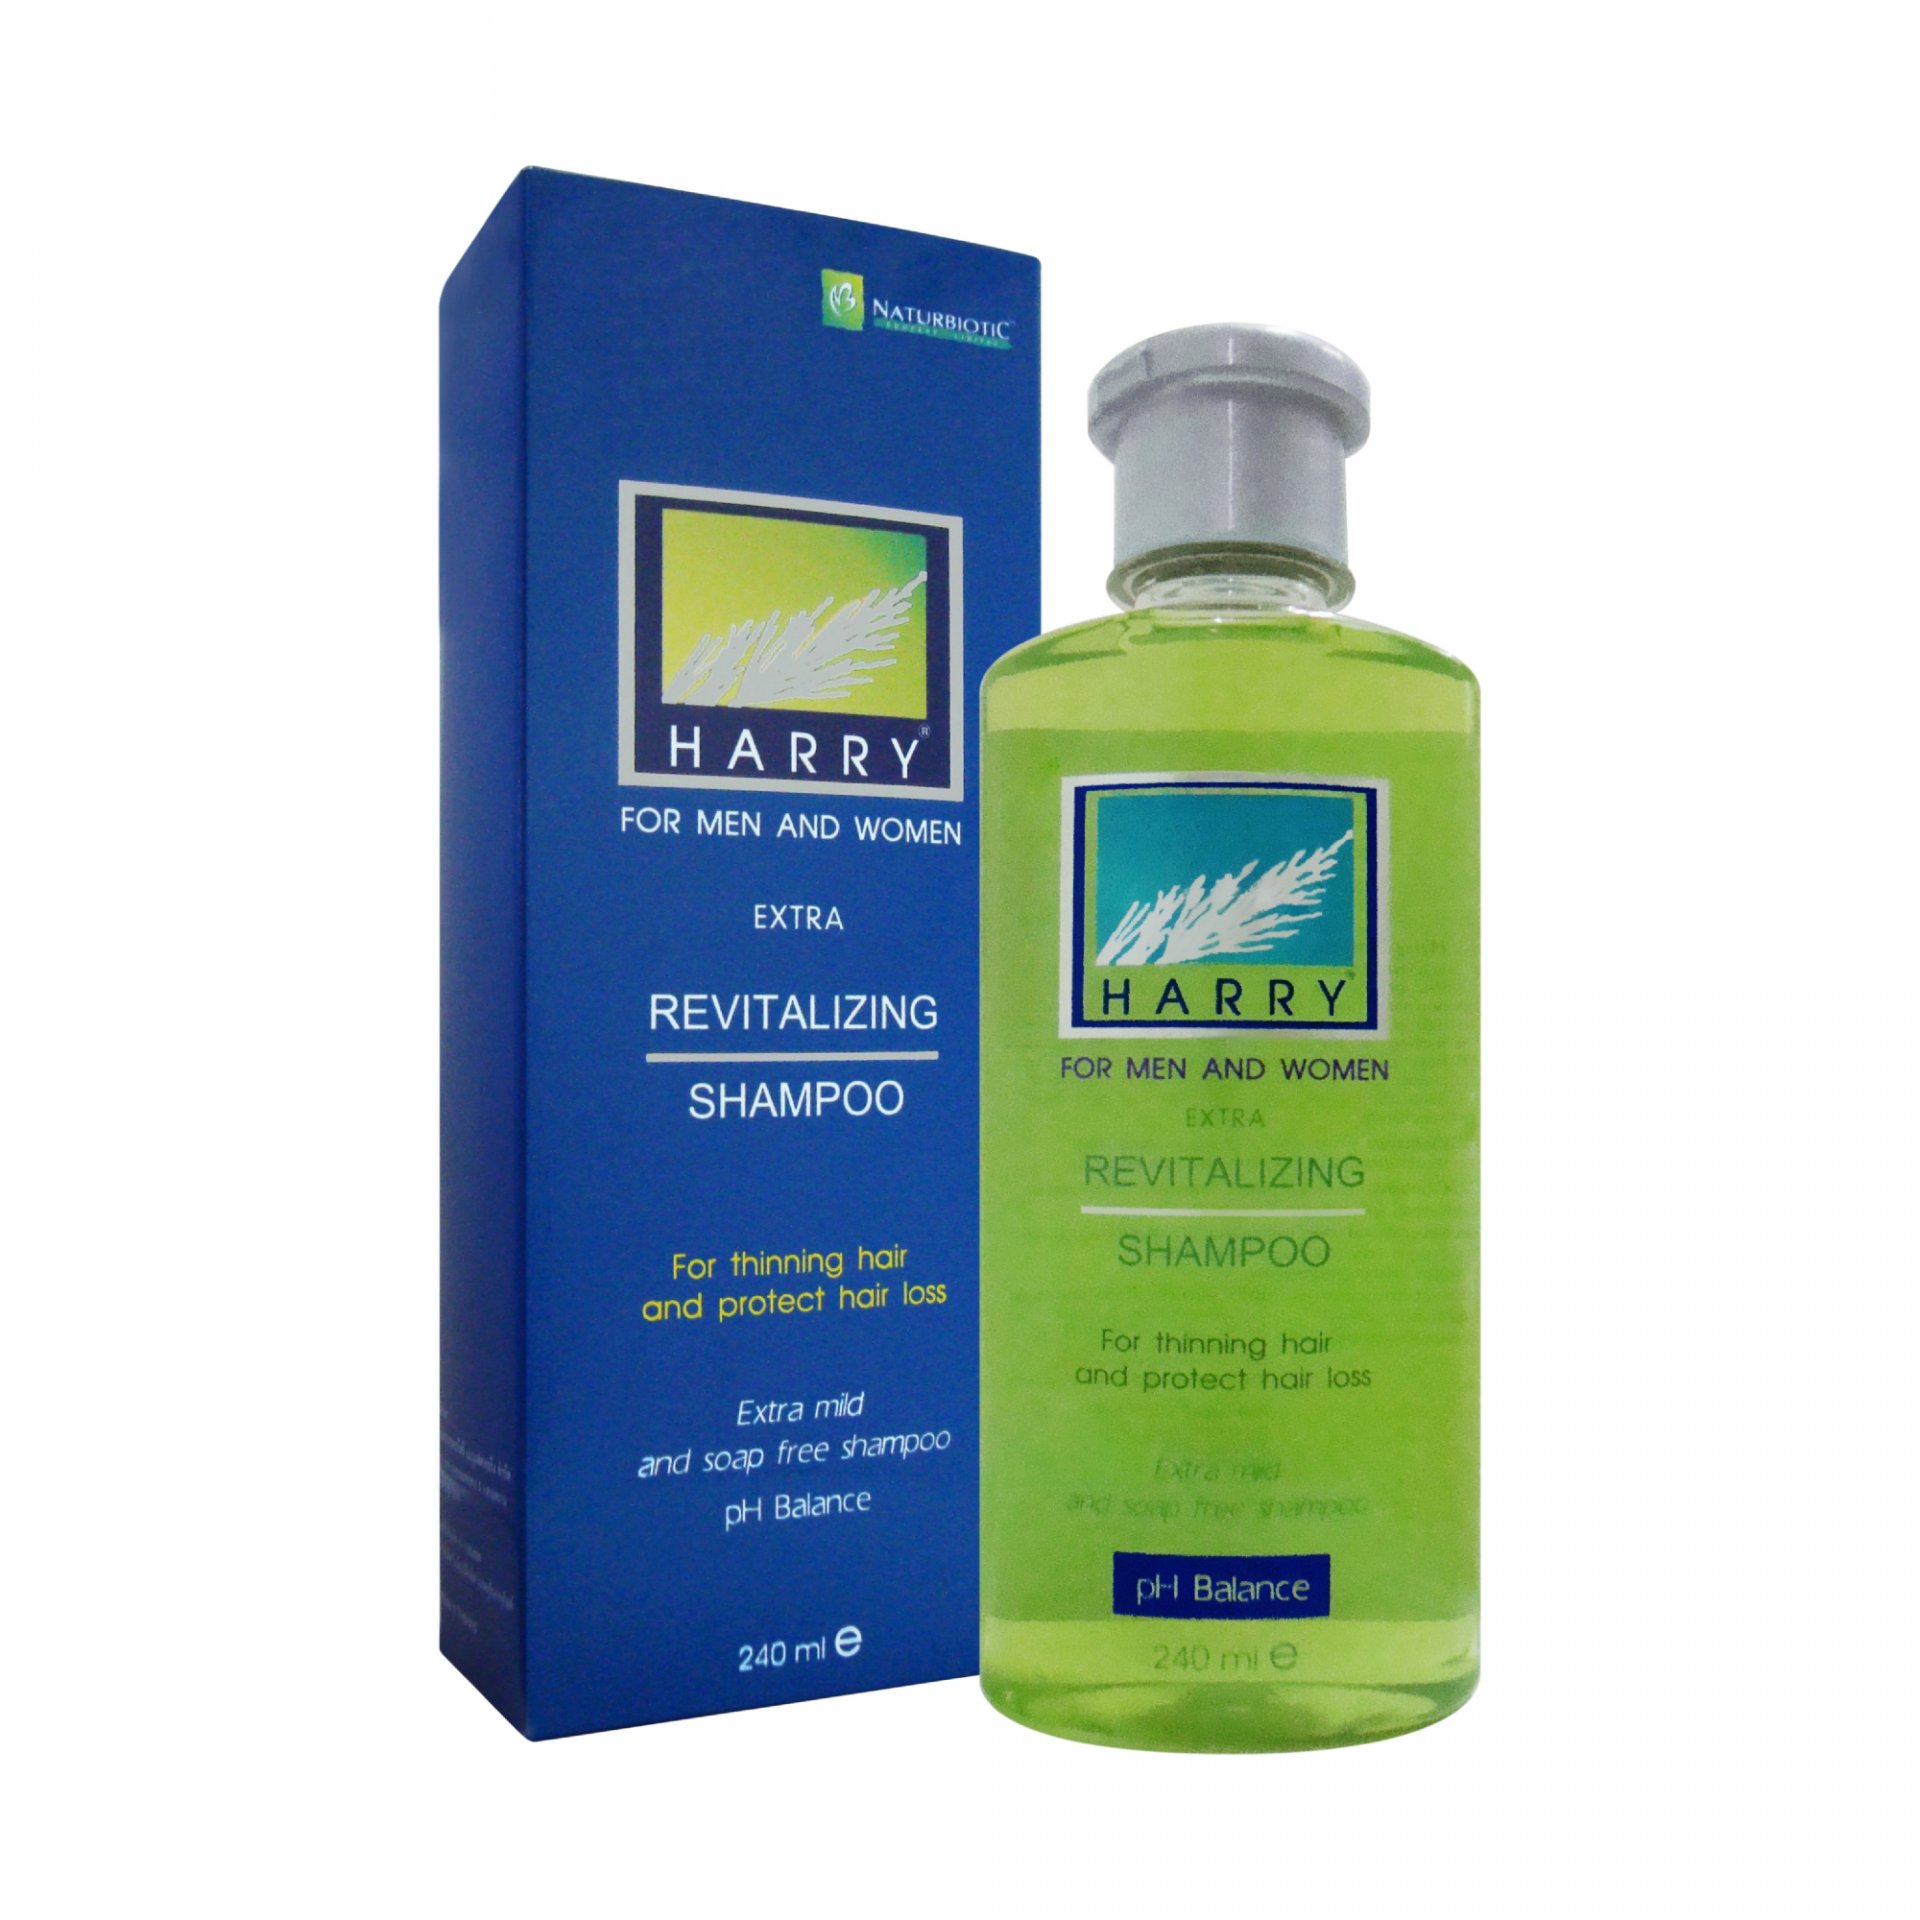 HARRY Extra Revitalizing Shampoo 240ml